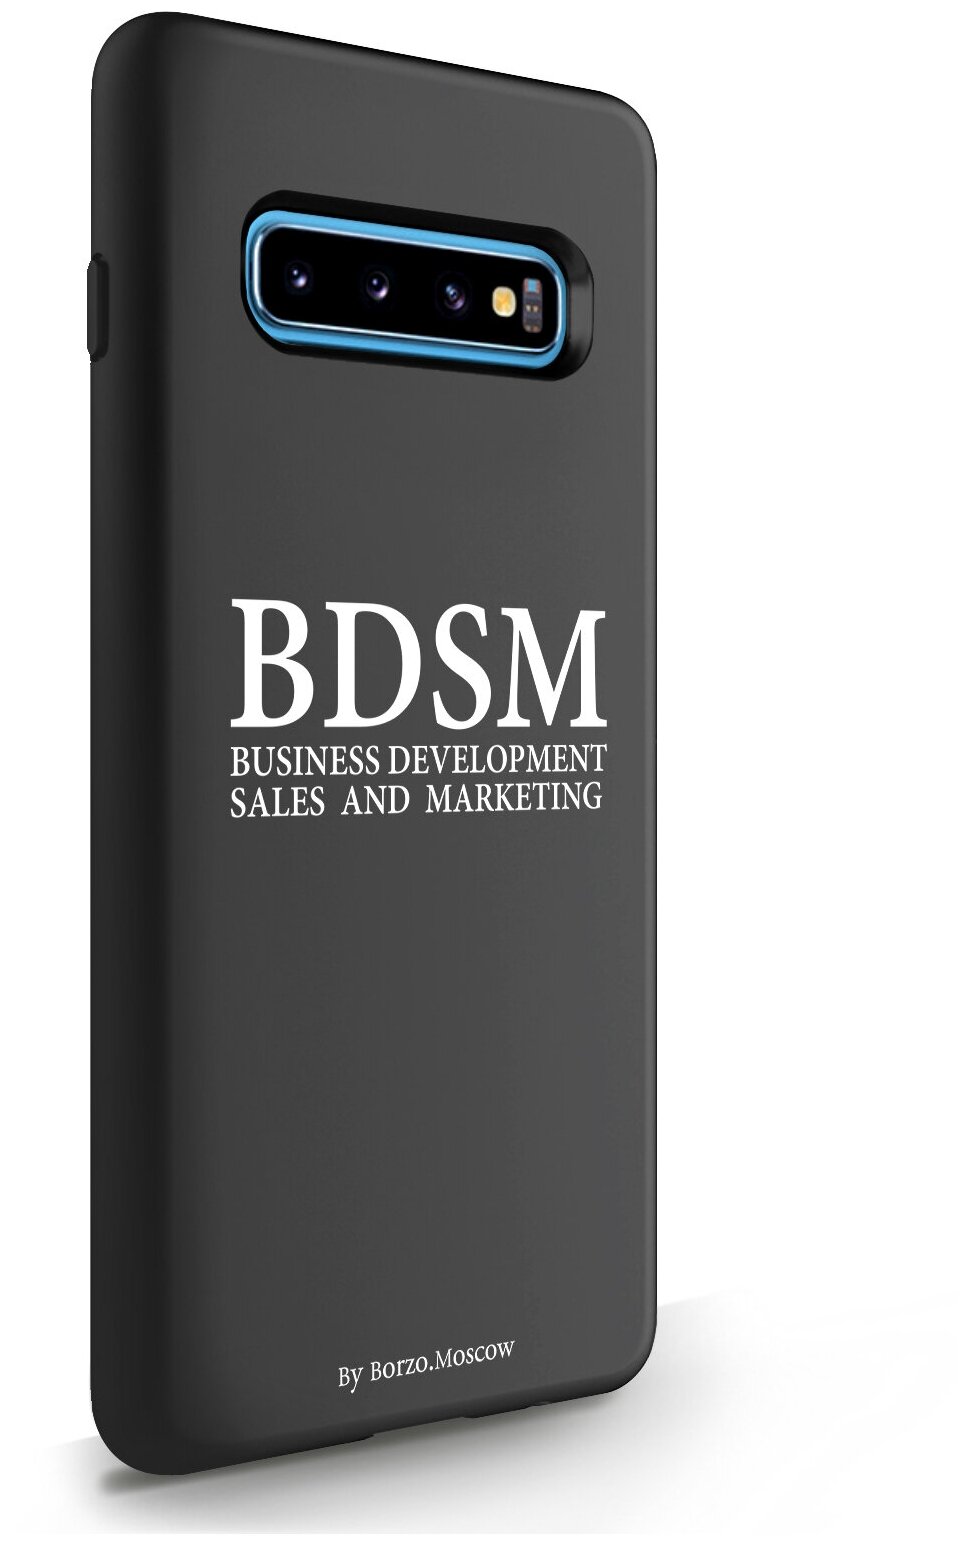 Черный силиконовый чехол Borzo.Moscow для Samsung Galaxy S10 Plus BDSM (business development sales and marketing) для Самсунг Галакси С10 Плюс